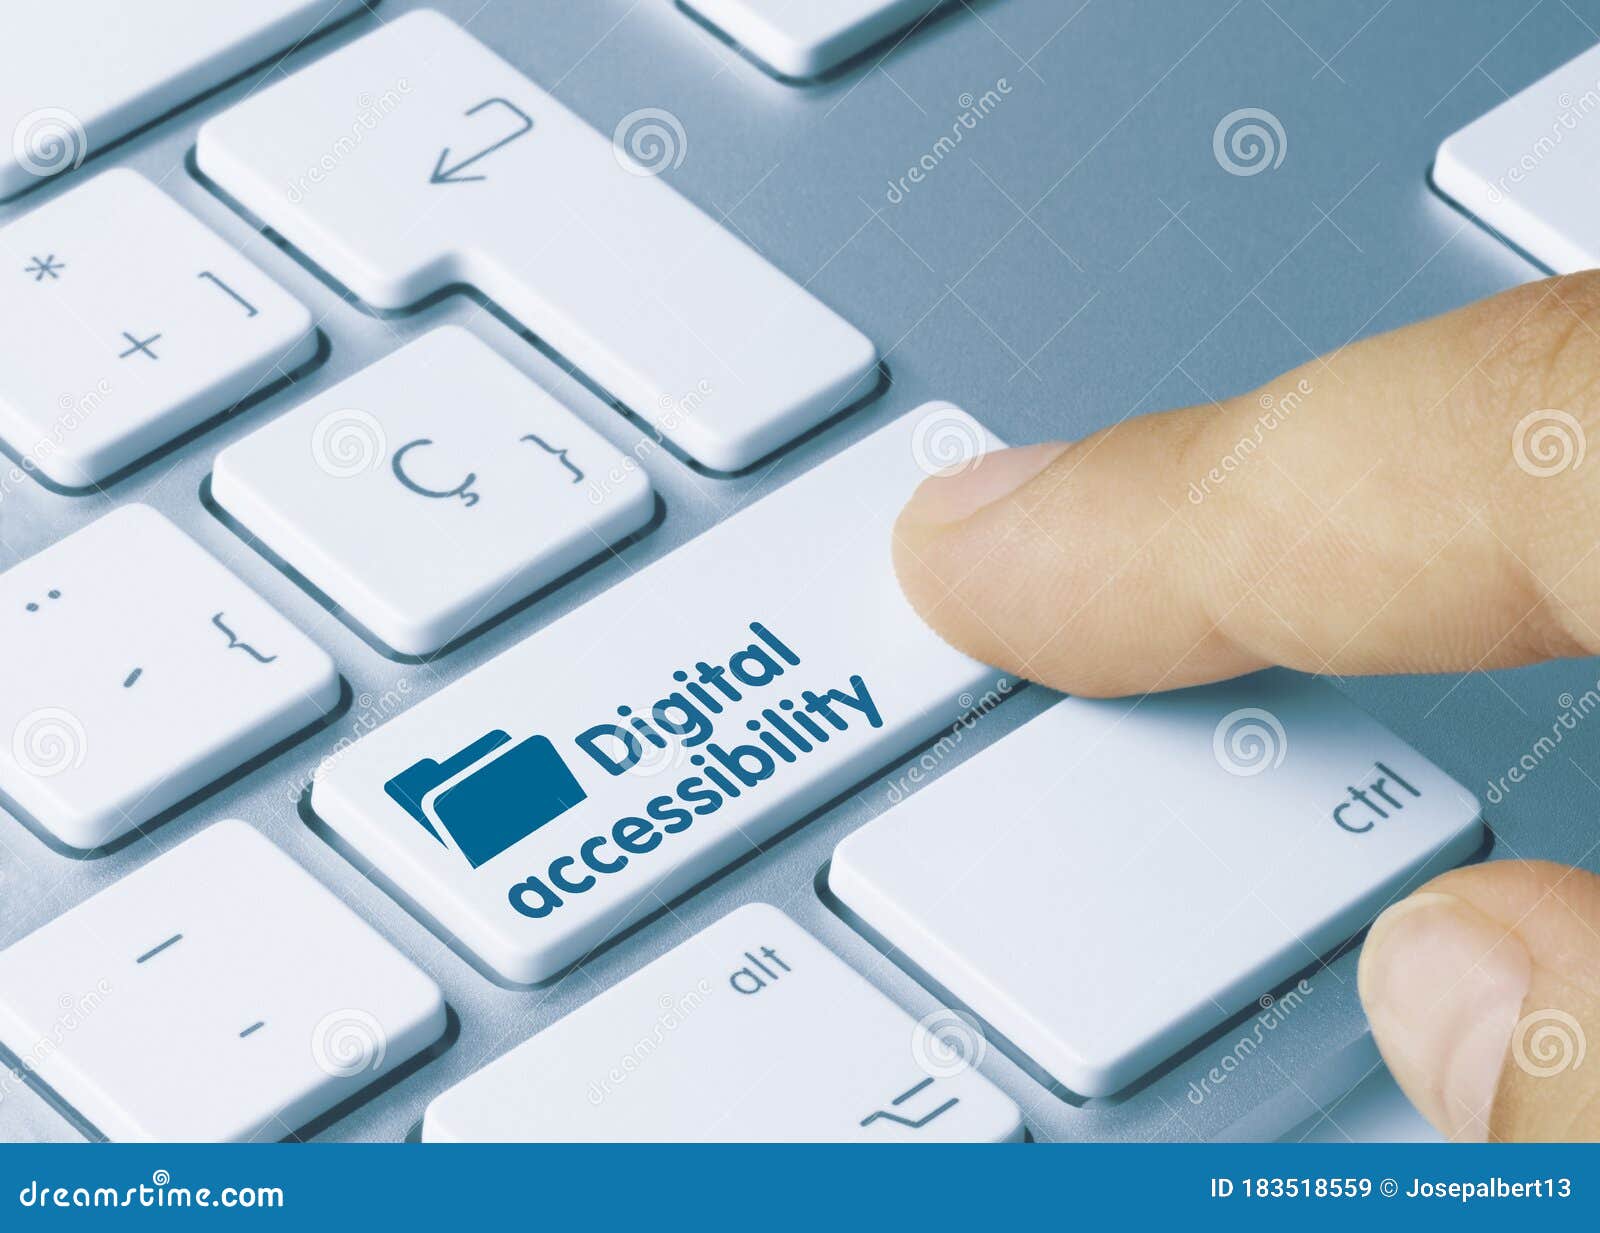 digital accessibility - inscription on blue keyboard key